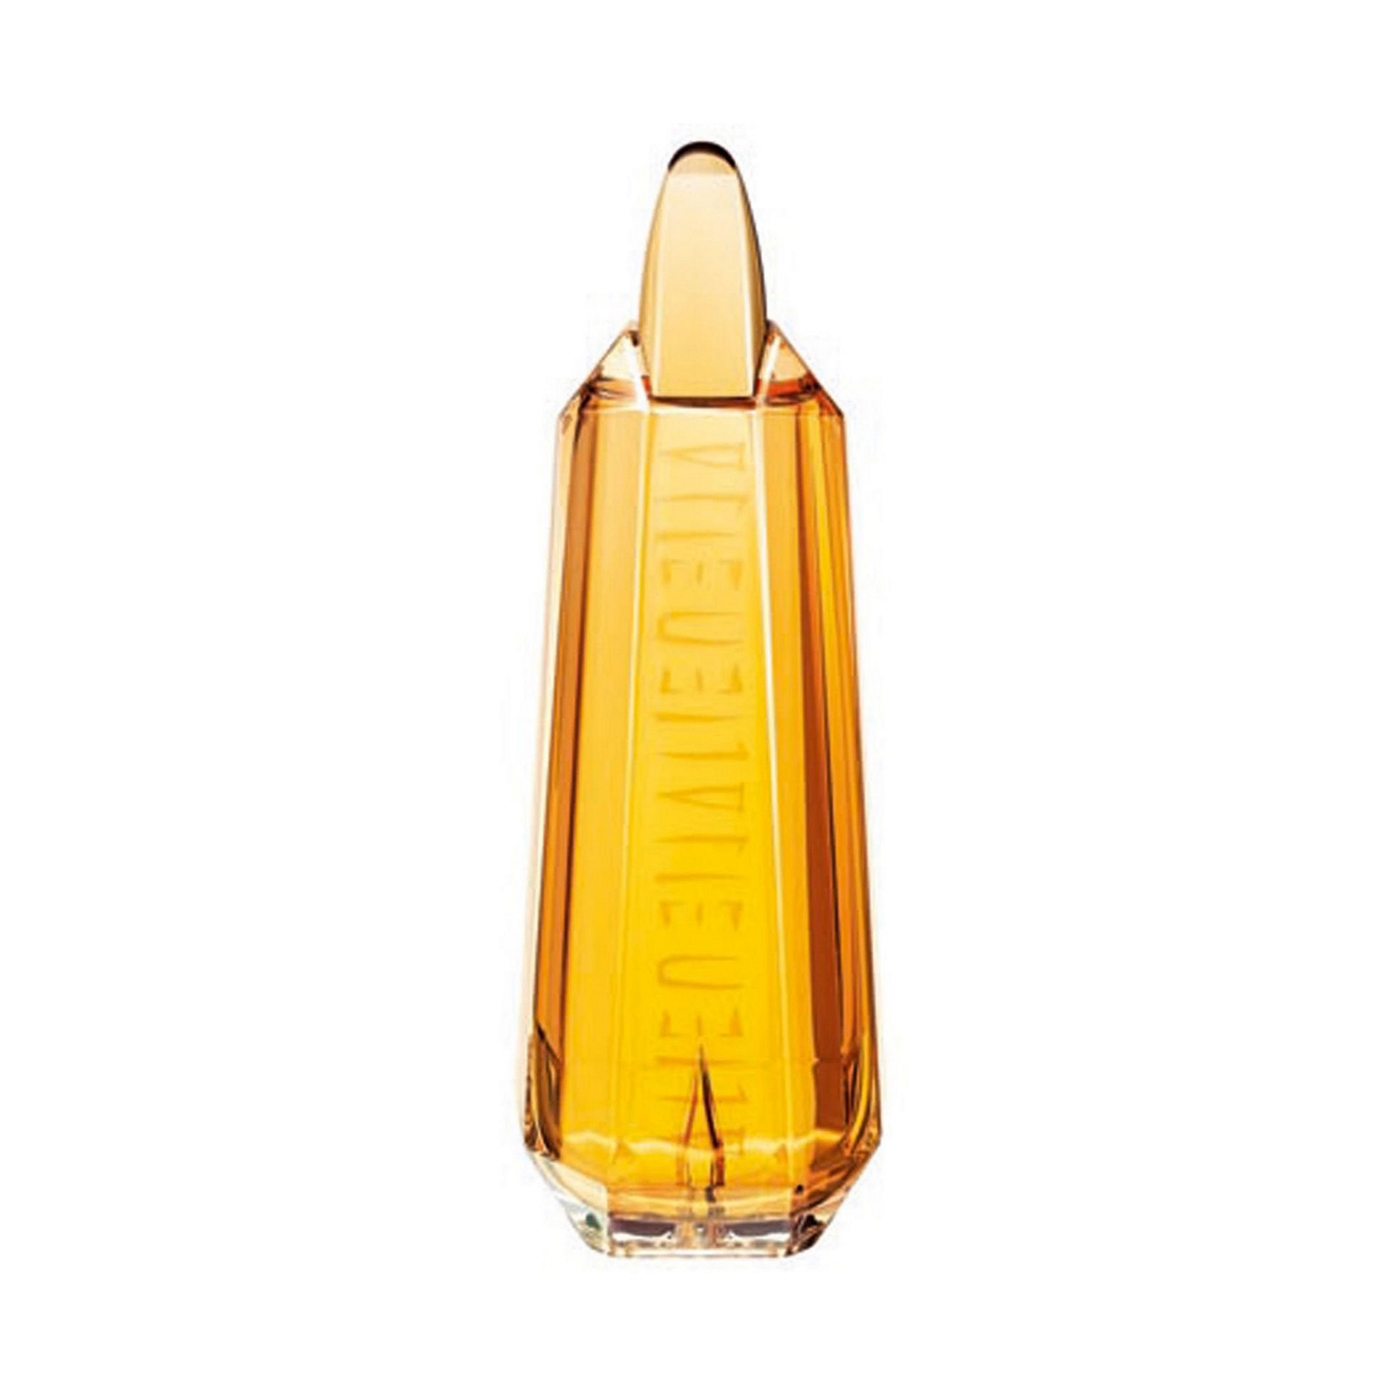 Thierry Mugler Alien Essence Absolue 60ml Eau de Parfum Intense Refill bottle